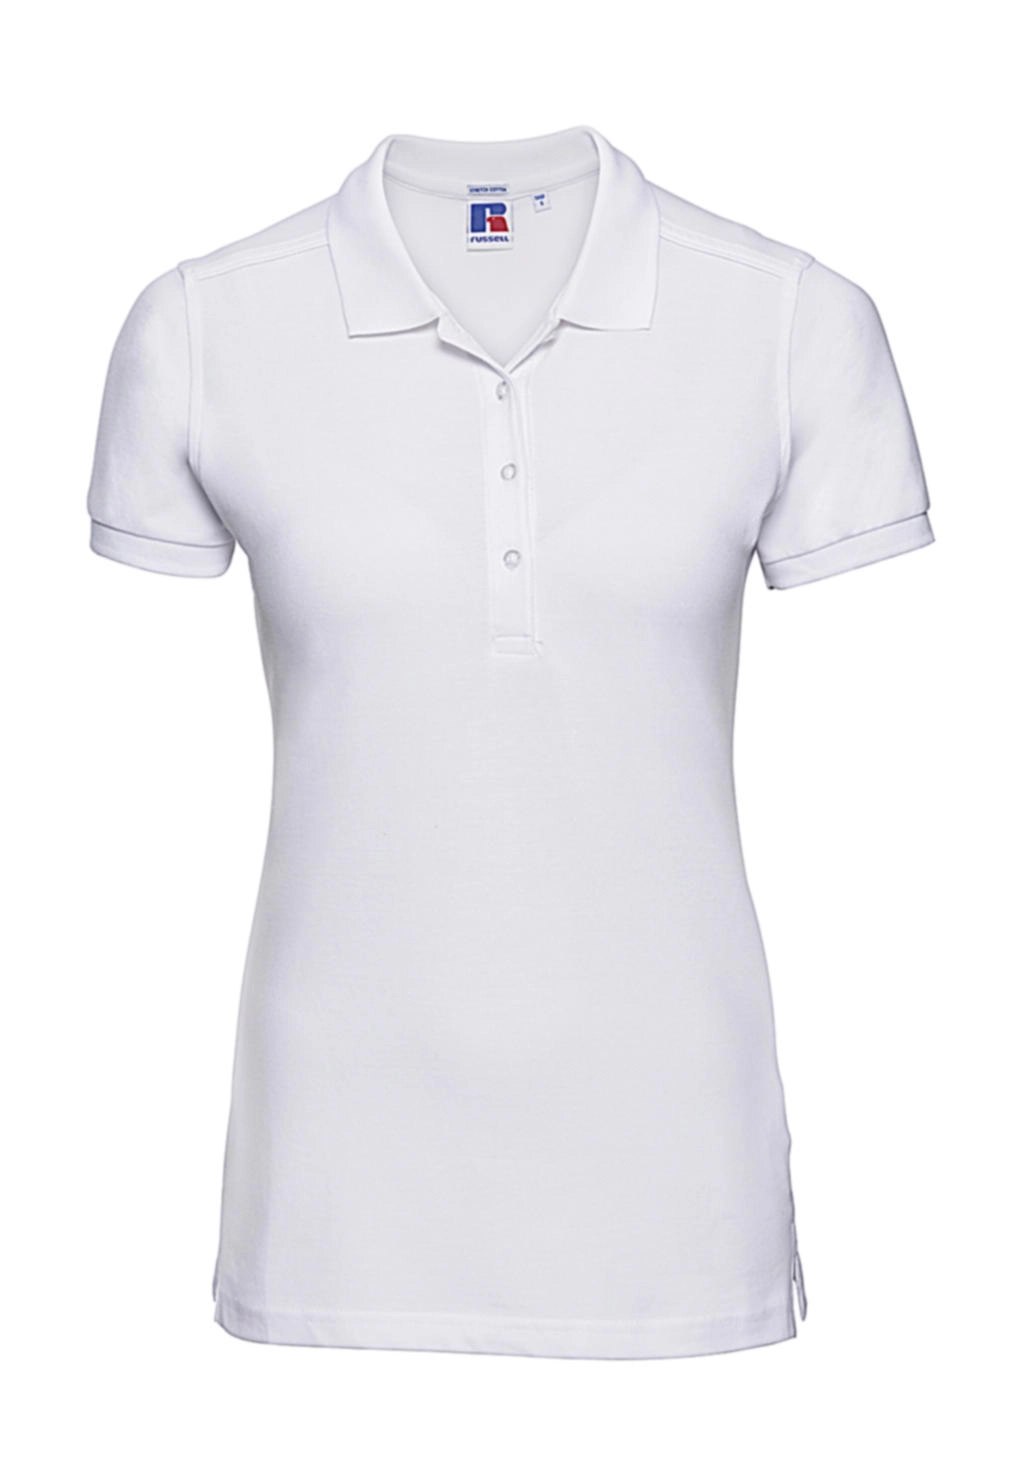 Ladies` Fitted Stretch Polo zum Besticken und Bedrucken in der Farbe White mit Ihren Logo, Schriftzug oder Motiv.